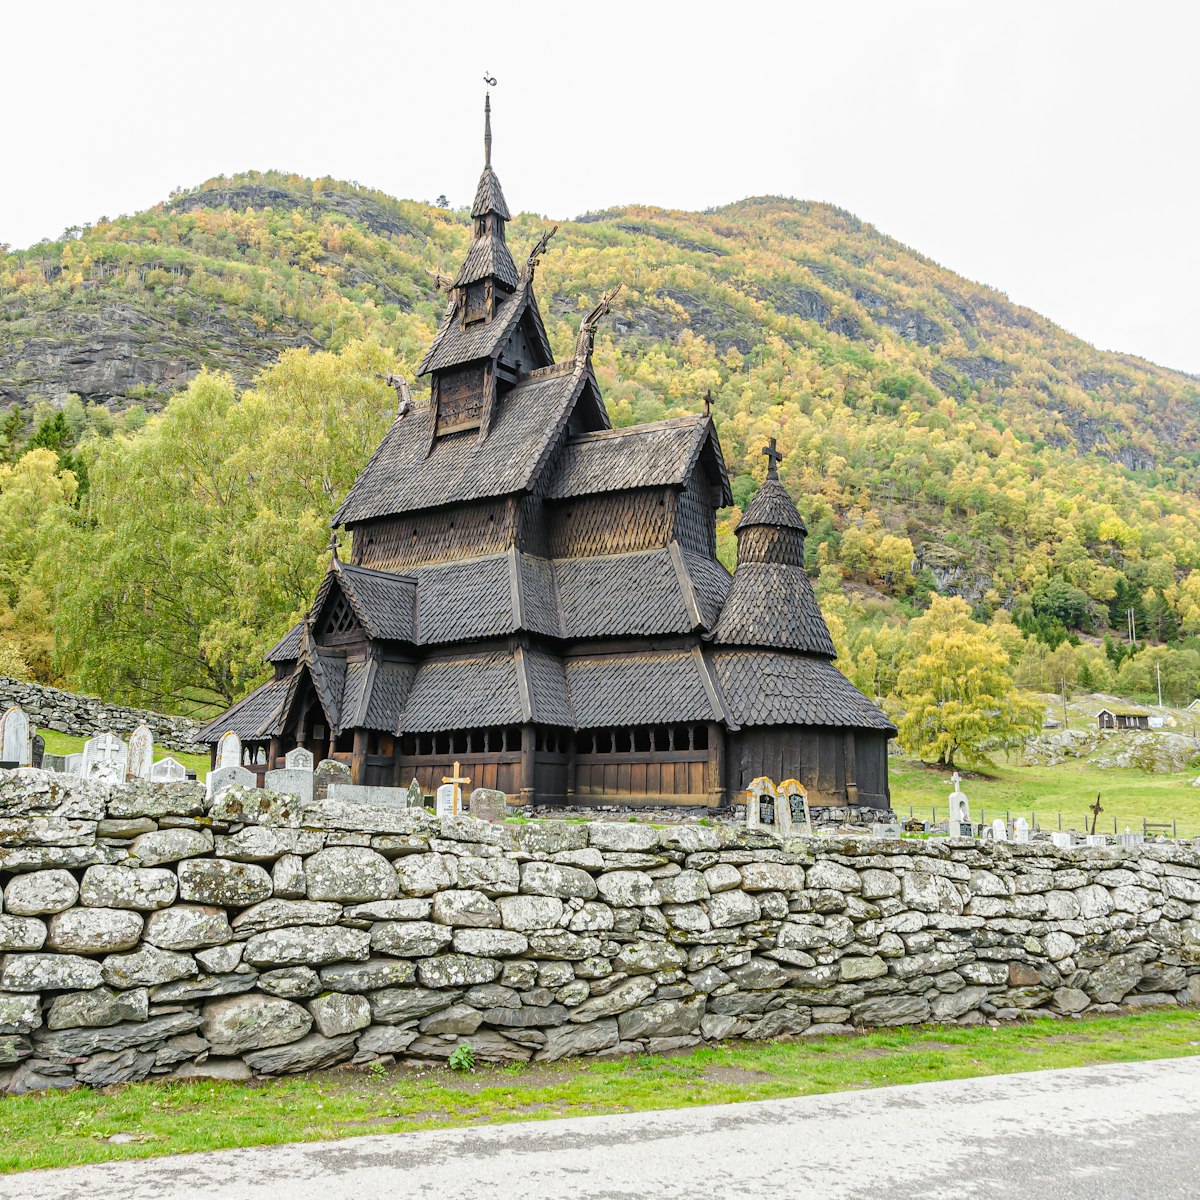 Borgund Stave church, Norway.